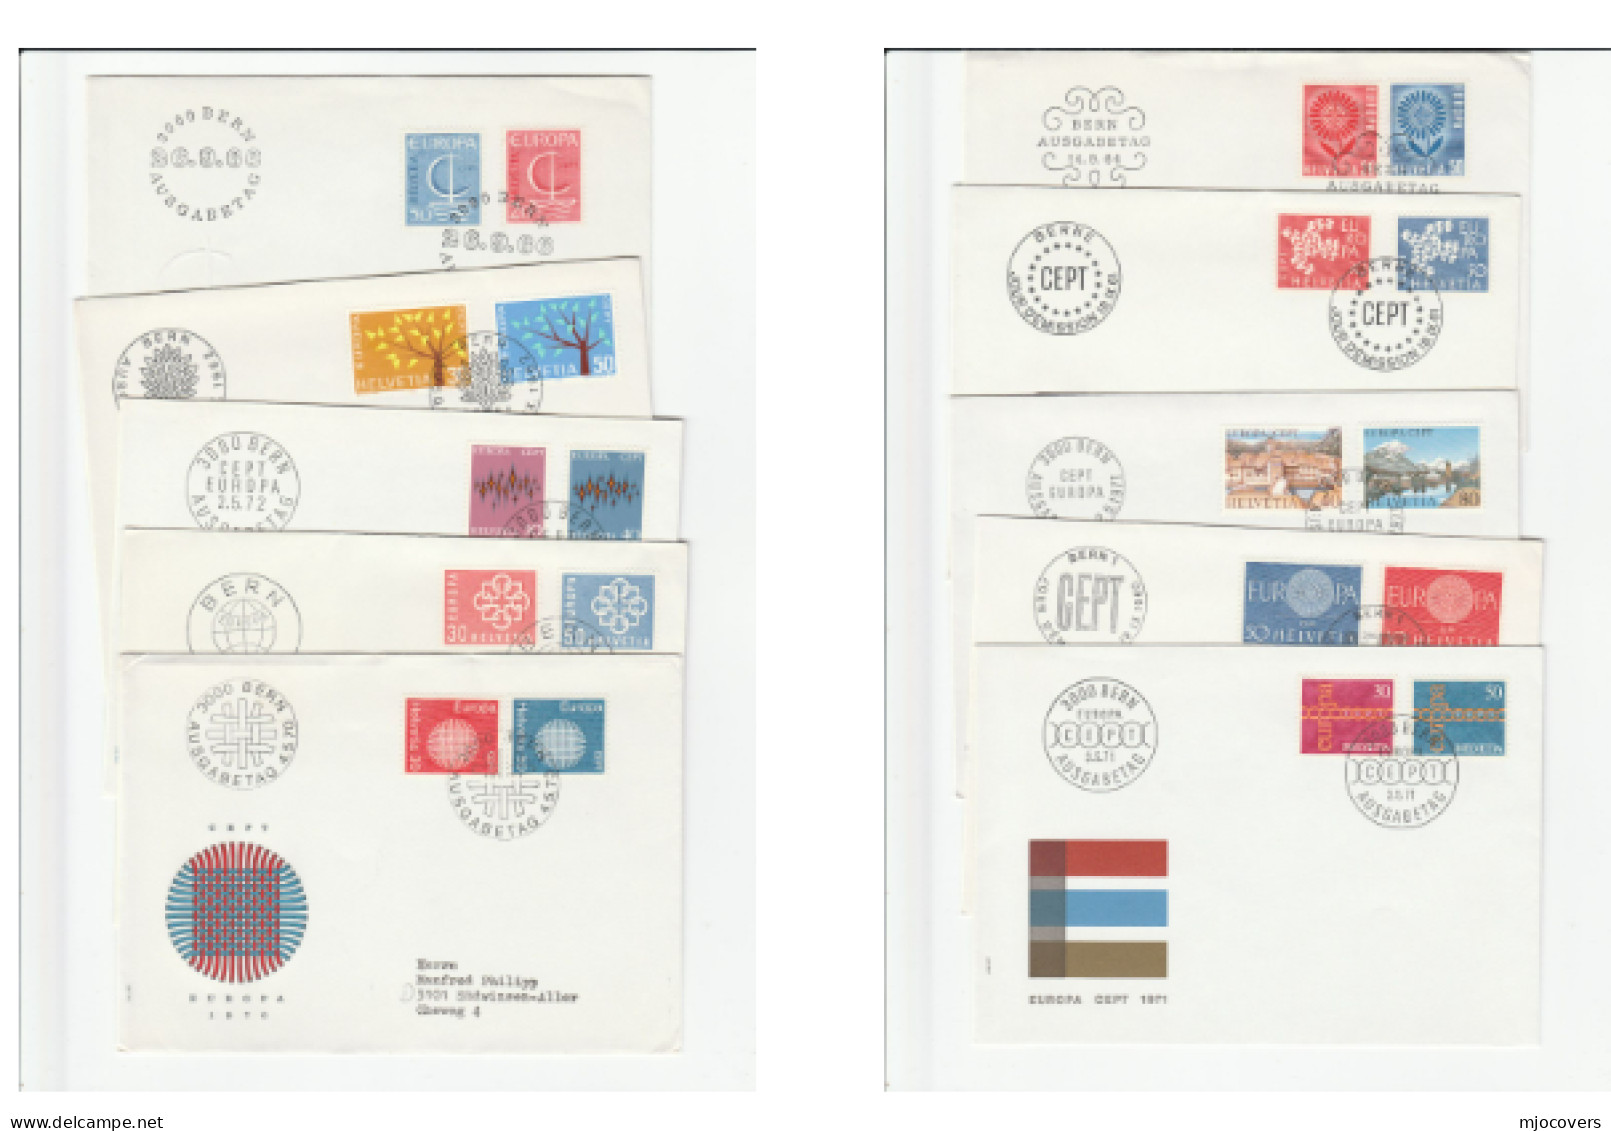 EUROPA 10 Diff SWITZERLAND FDCs 1959 - 1977 Fdc Cover Stamps - Collezioni